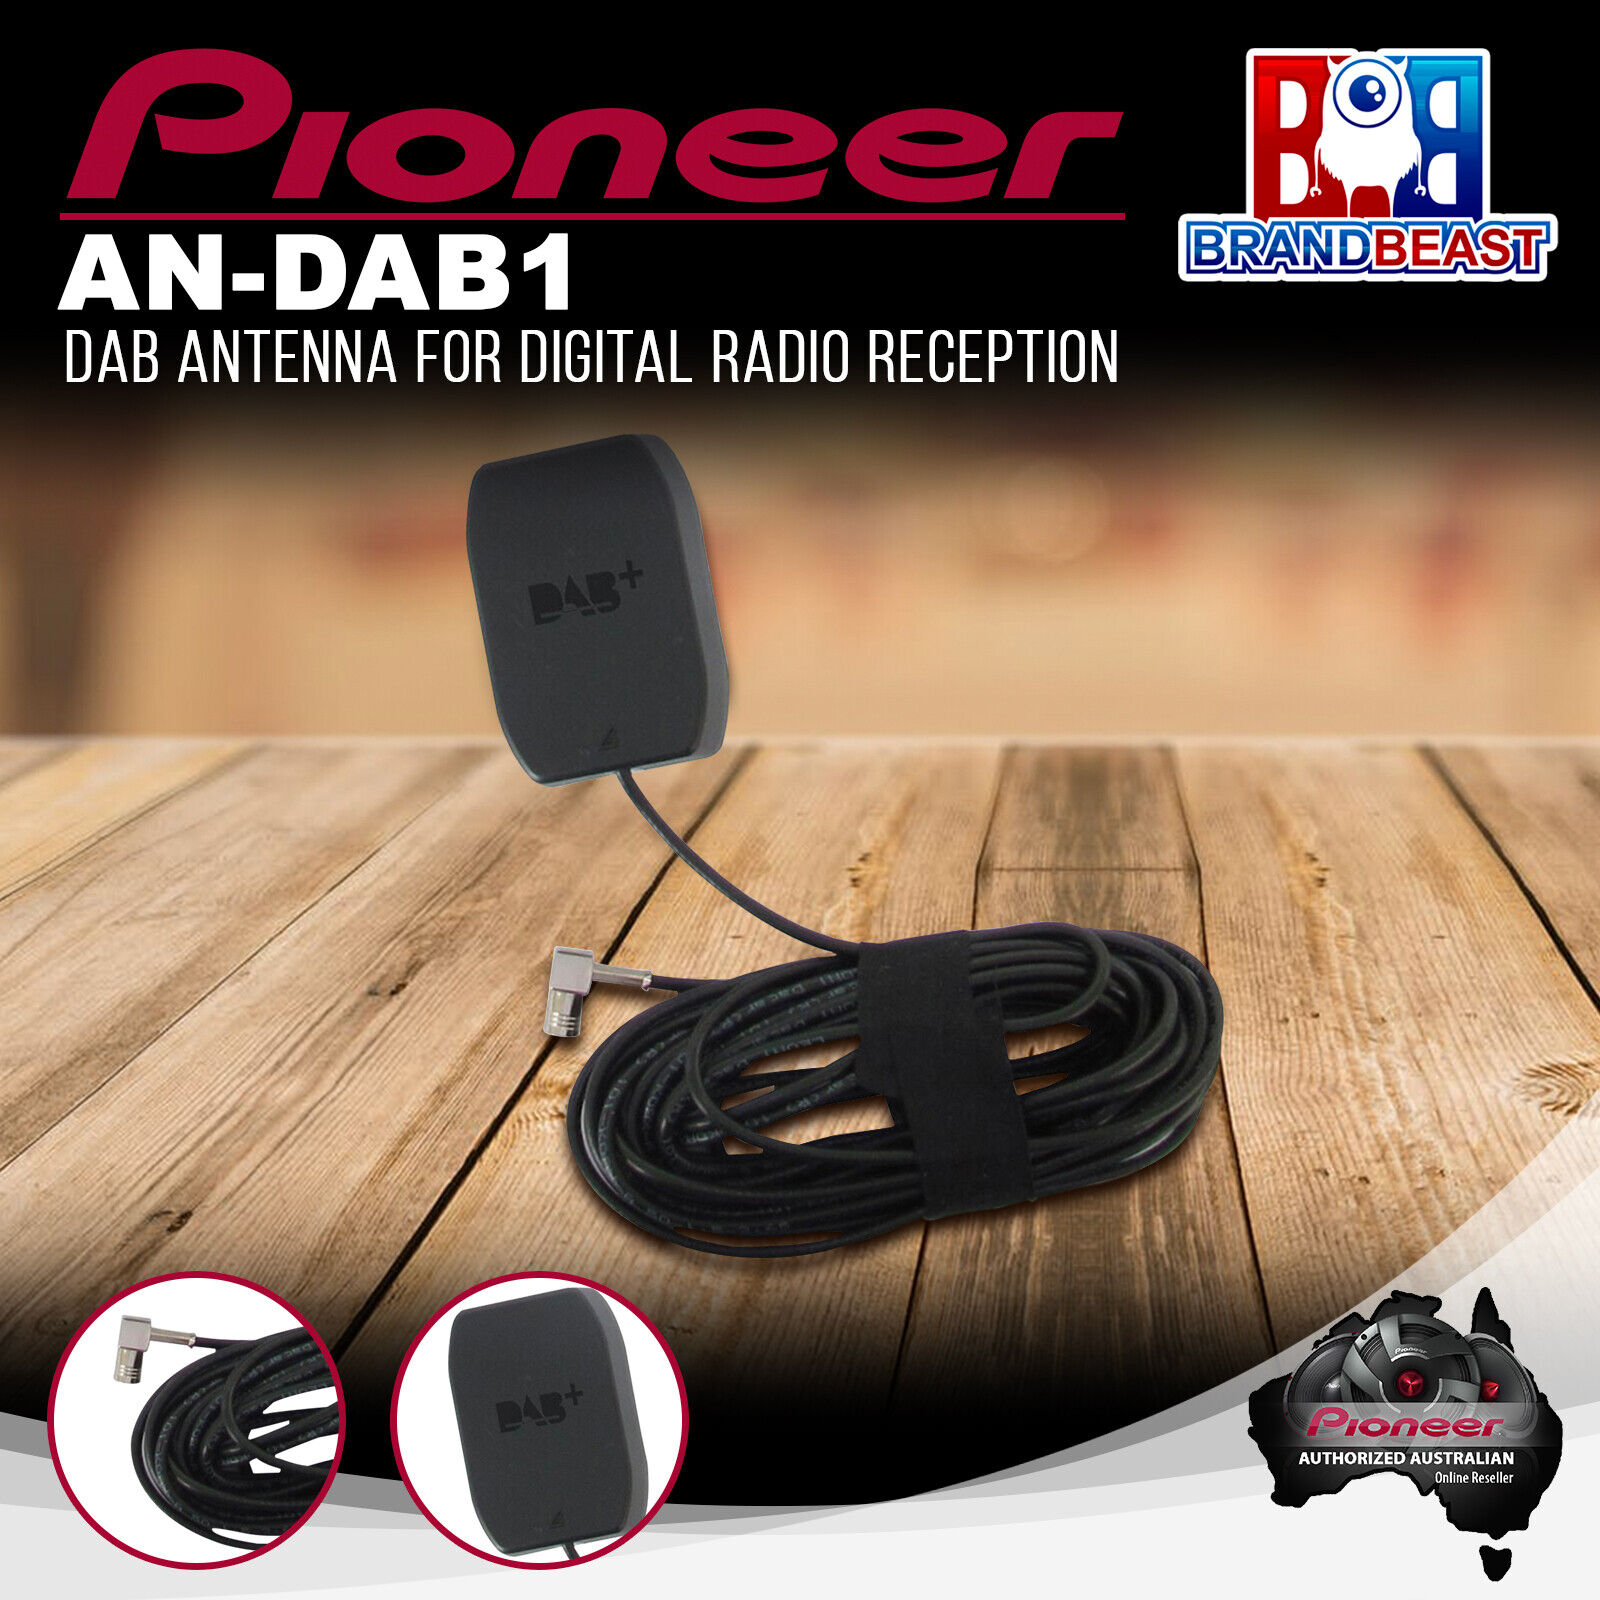 Pioneer AN-DAB1 DAB+ Antenna for Digital Radio Reception - BrandBeast